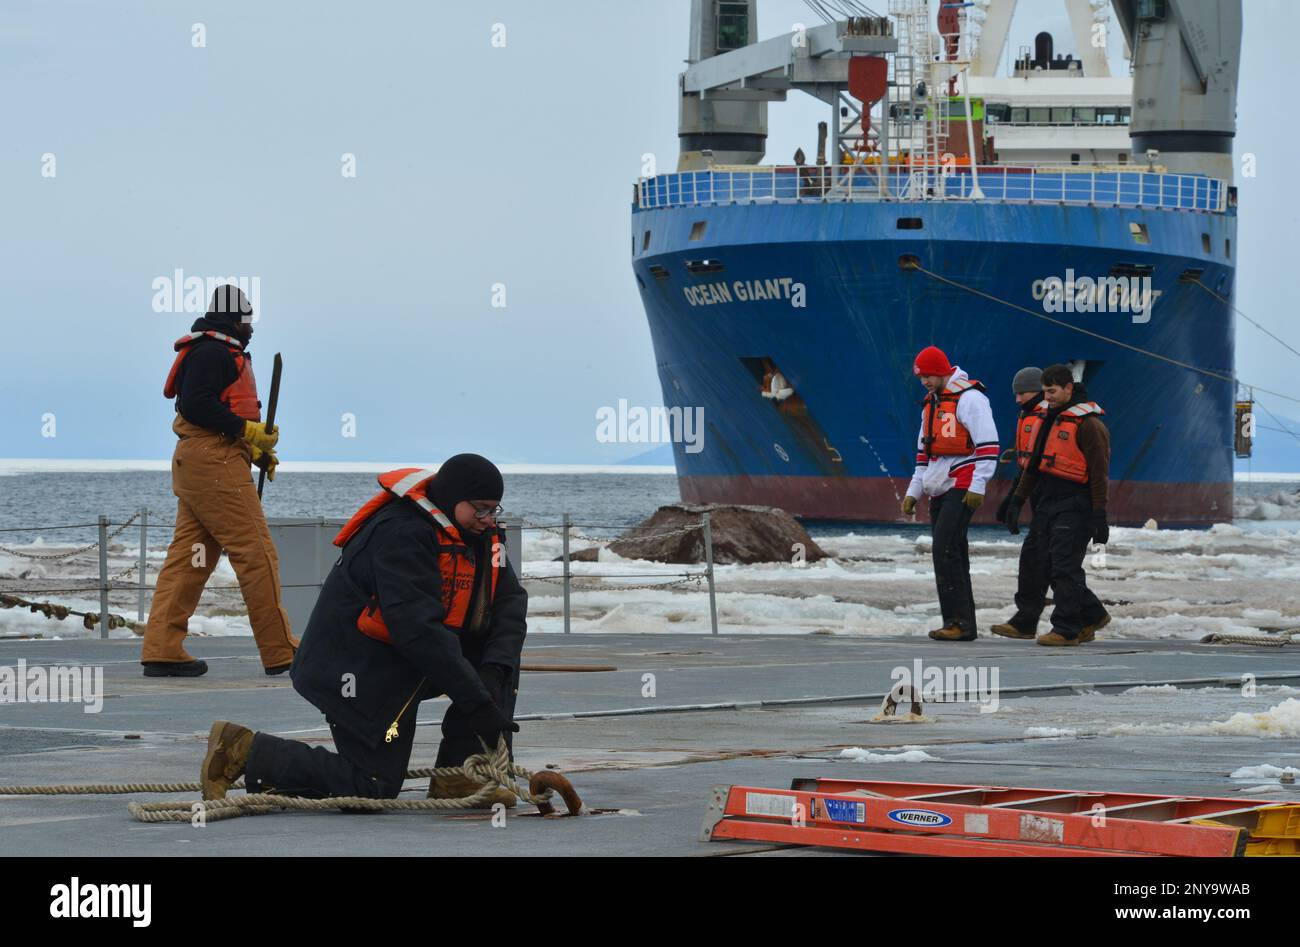 Soldats des États-Unis La brigade de transport de l'armée 7th (expéditionnaire) relie des sections du système modulaire de pont-jetée du navire de cargaison MV Ocean Giant, affrété par le Commandement du transport militaire de marchandises, à la station McMurdo, en Antarctique. La Force opérationnelle interarmées – Forces de soutien Antarctique (foi–SFA) supervise les activités des services conjoints et fournit un appui du ministère de la Défense à la National Science Foundation (NSF) et au United States Antarctic Program (USAP) par le biais de l'opération Deep Freeze. Banque D'Images